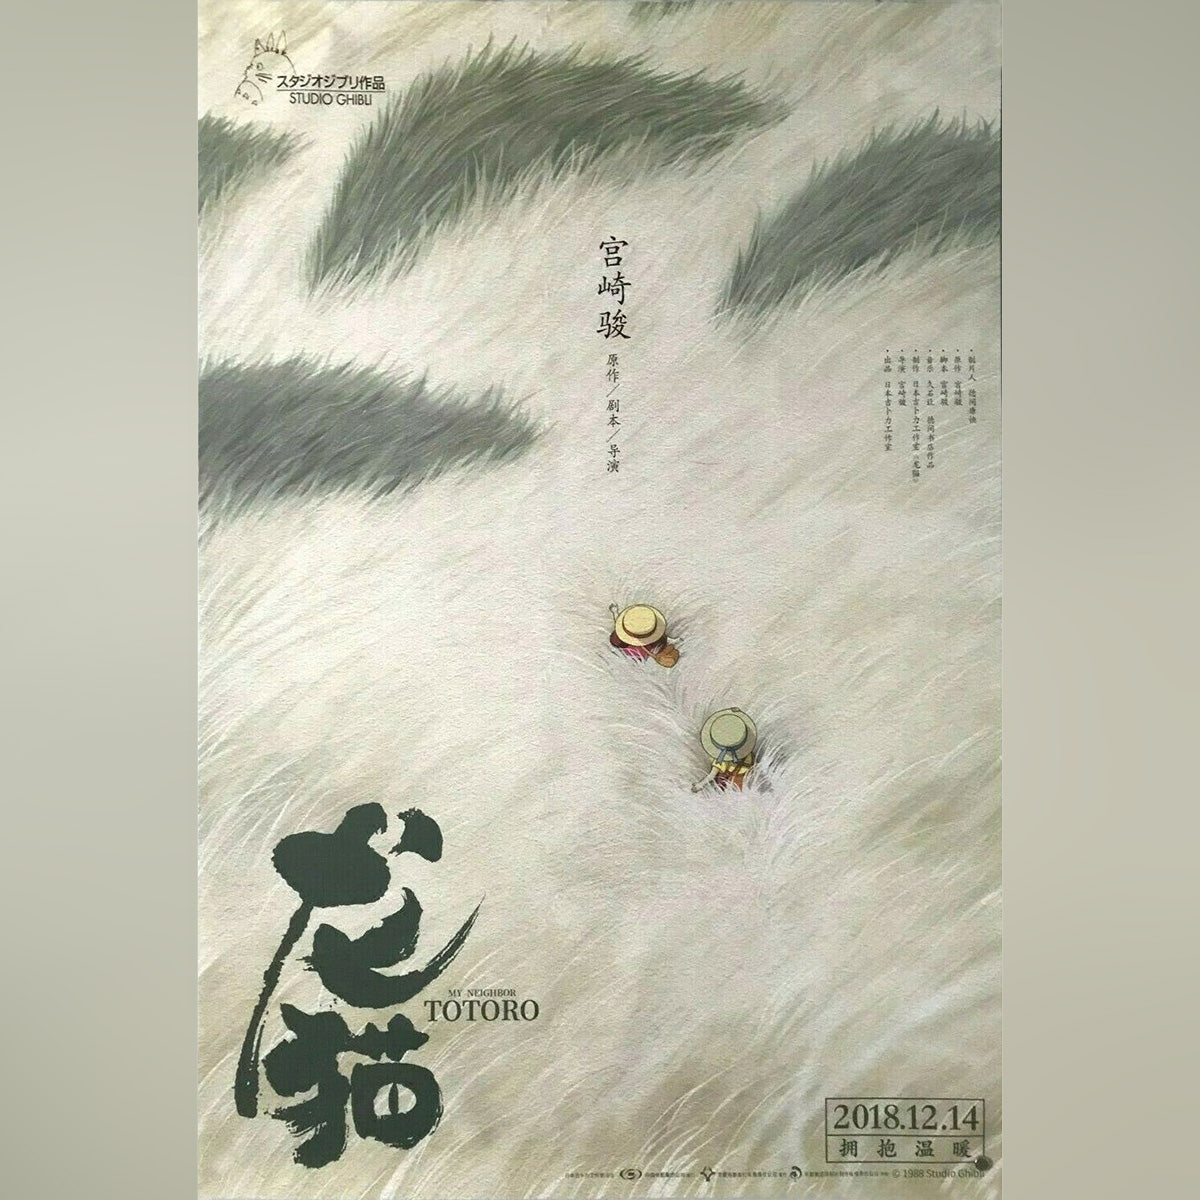 Original Movie Poster of My Neighbor Totoro (2018R)